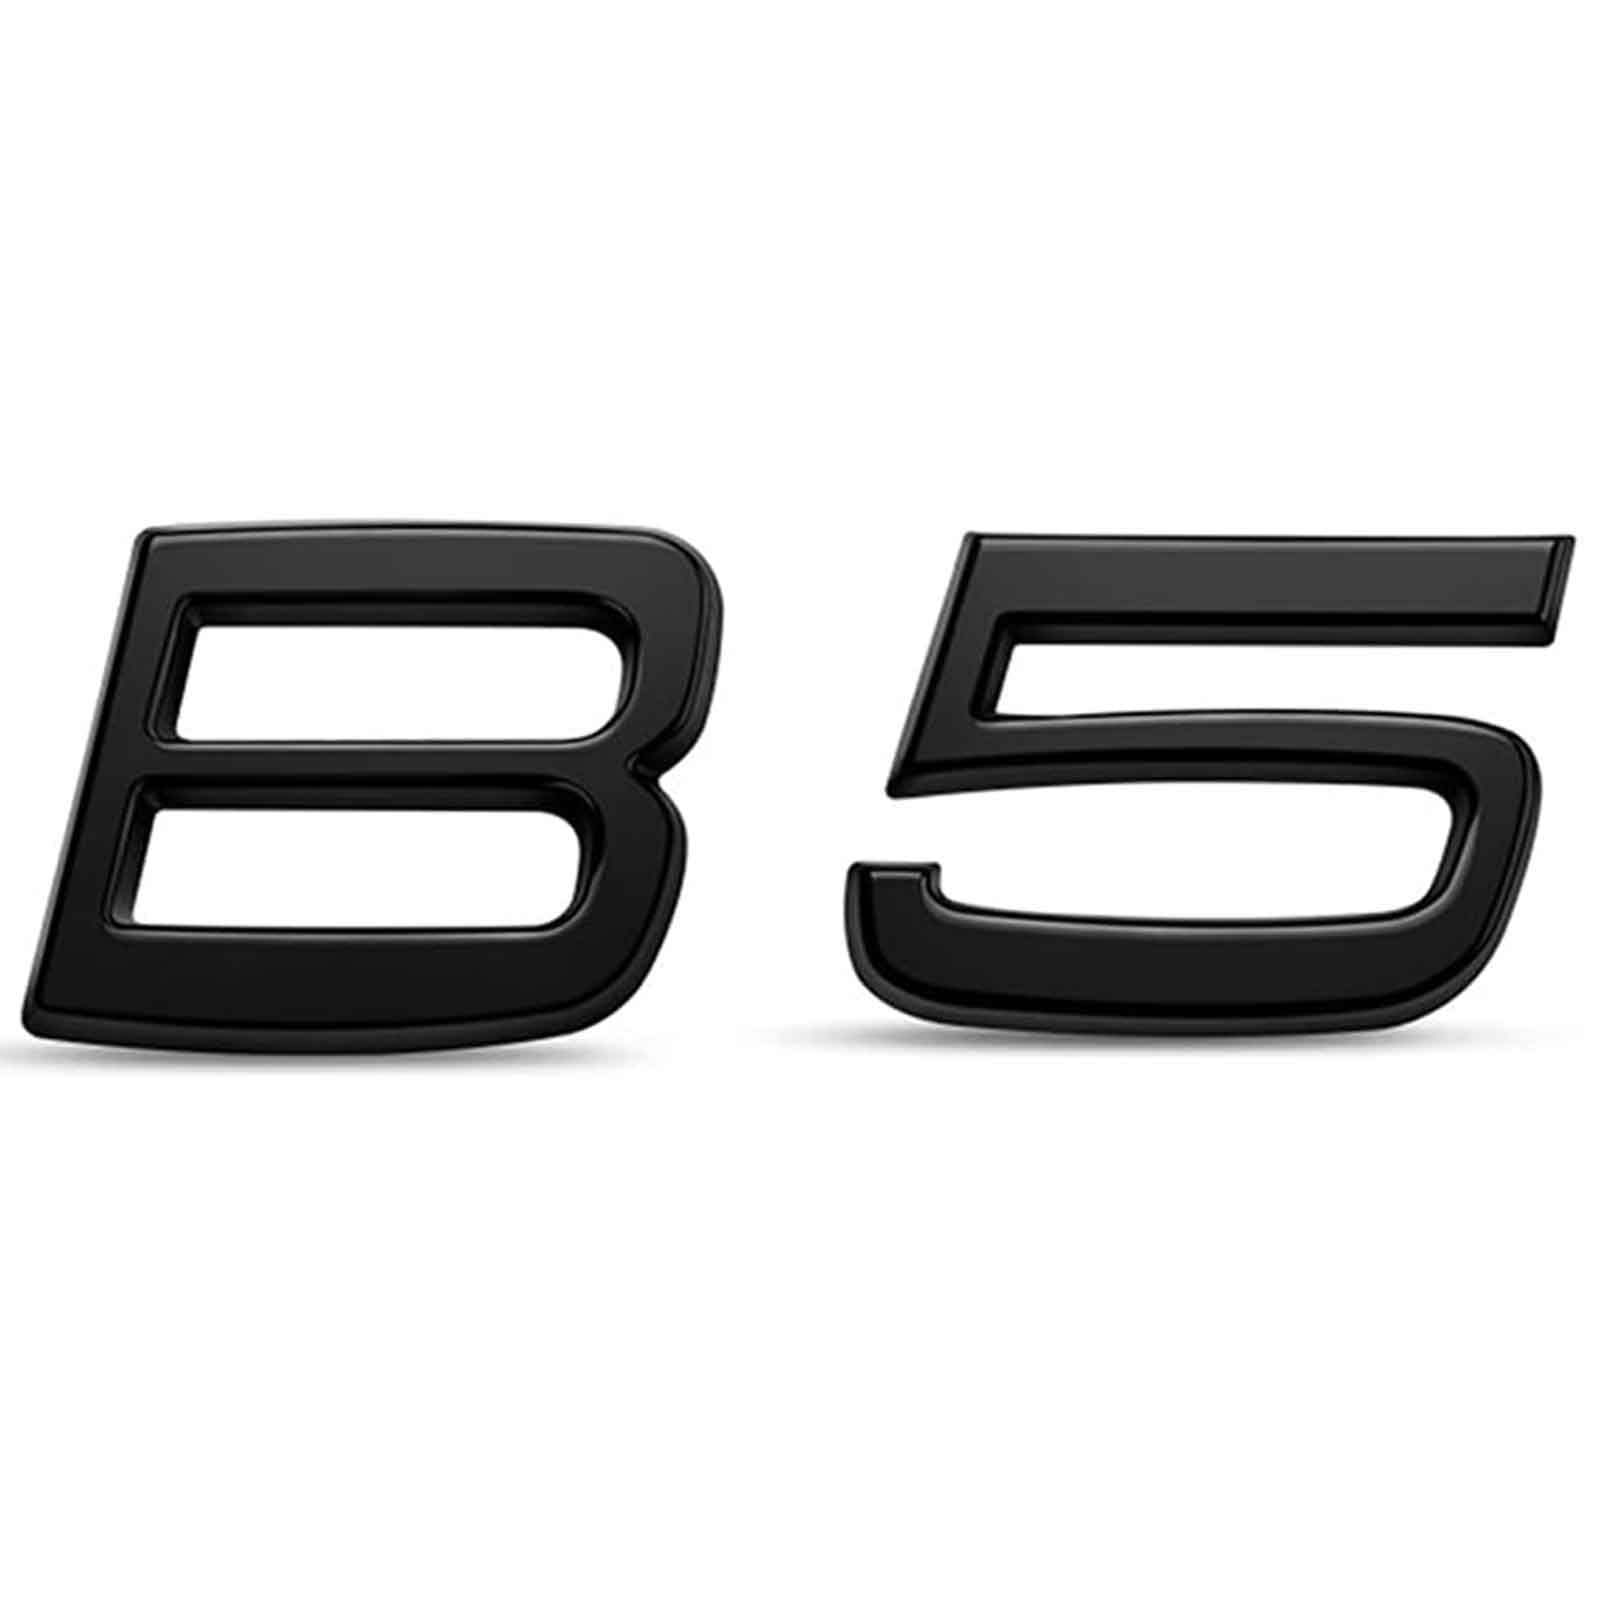 Auto Emblem für Volvo B6 B5, Front Motorhaube Kofferraum Badge Aufkleber Abziehbilder Karosserie Externe Dekoration Zubehör,B5- Black von MAIDETA